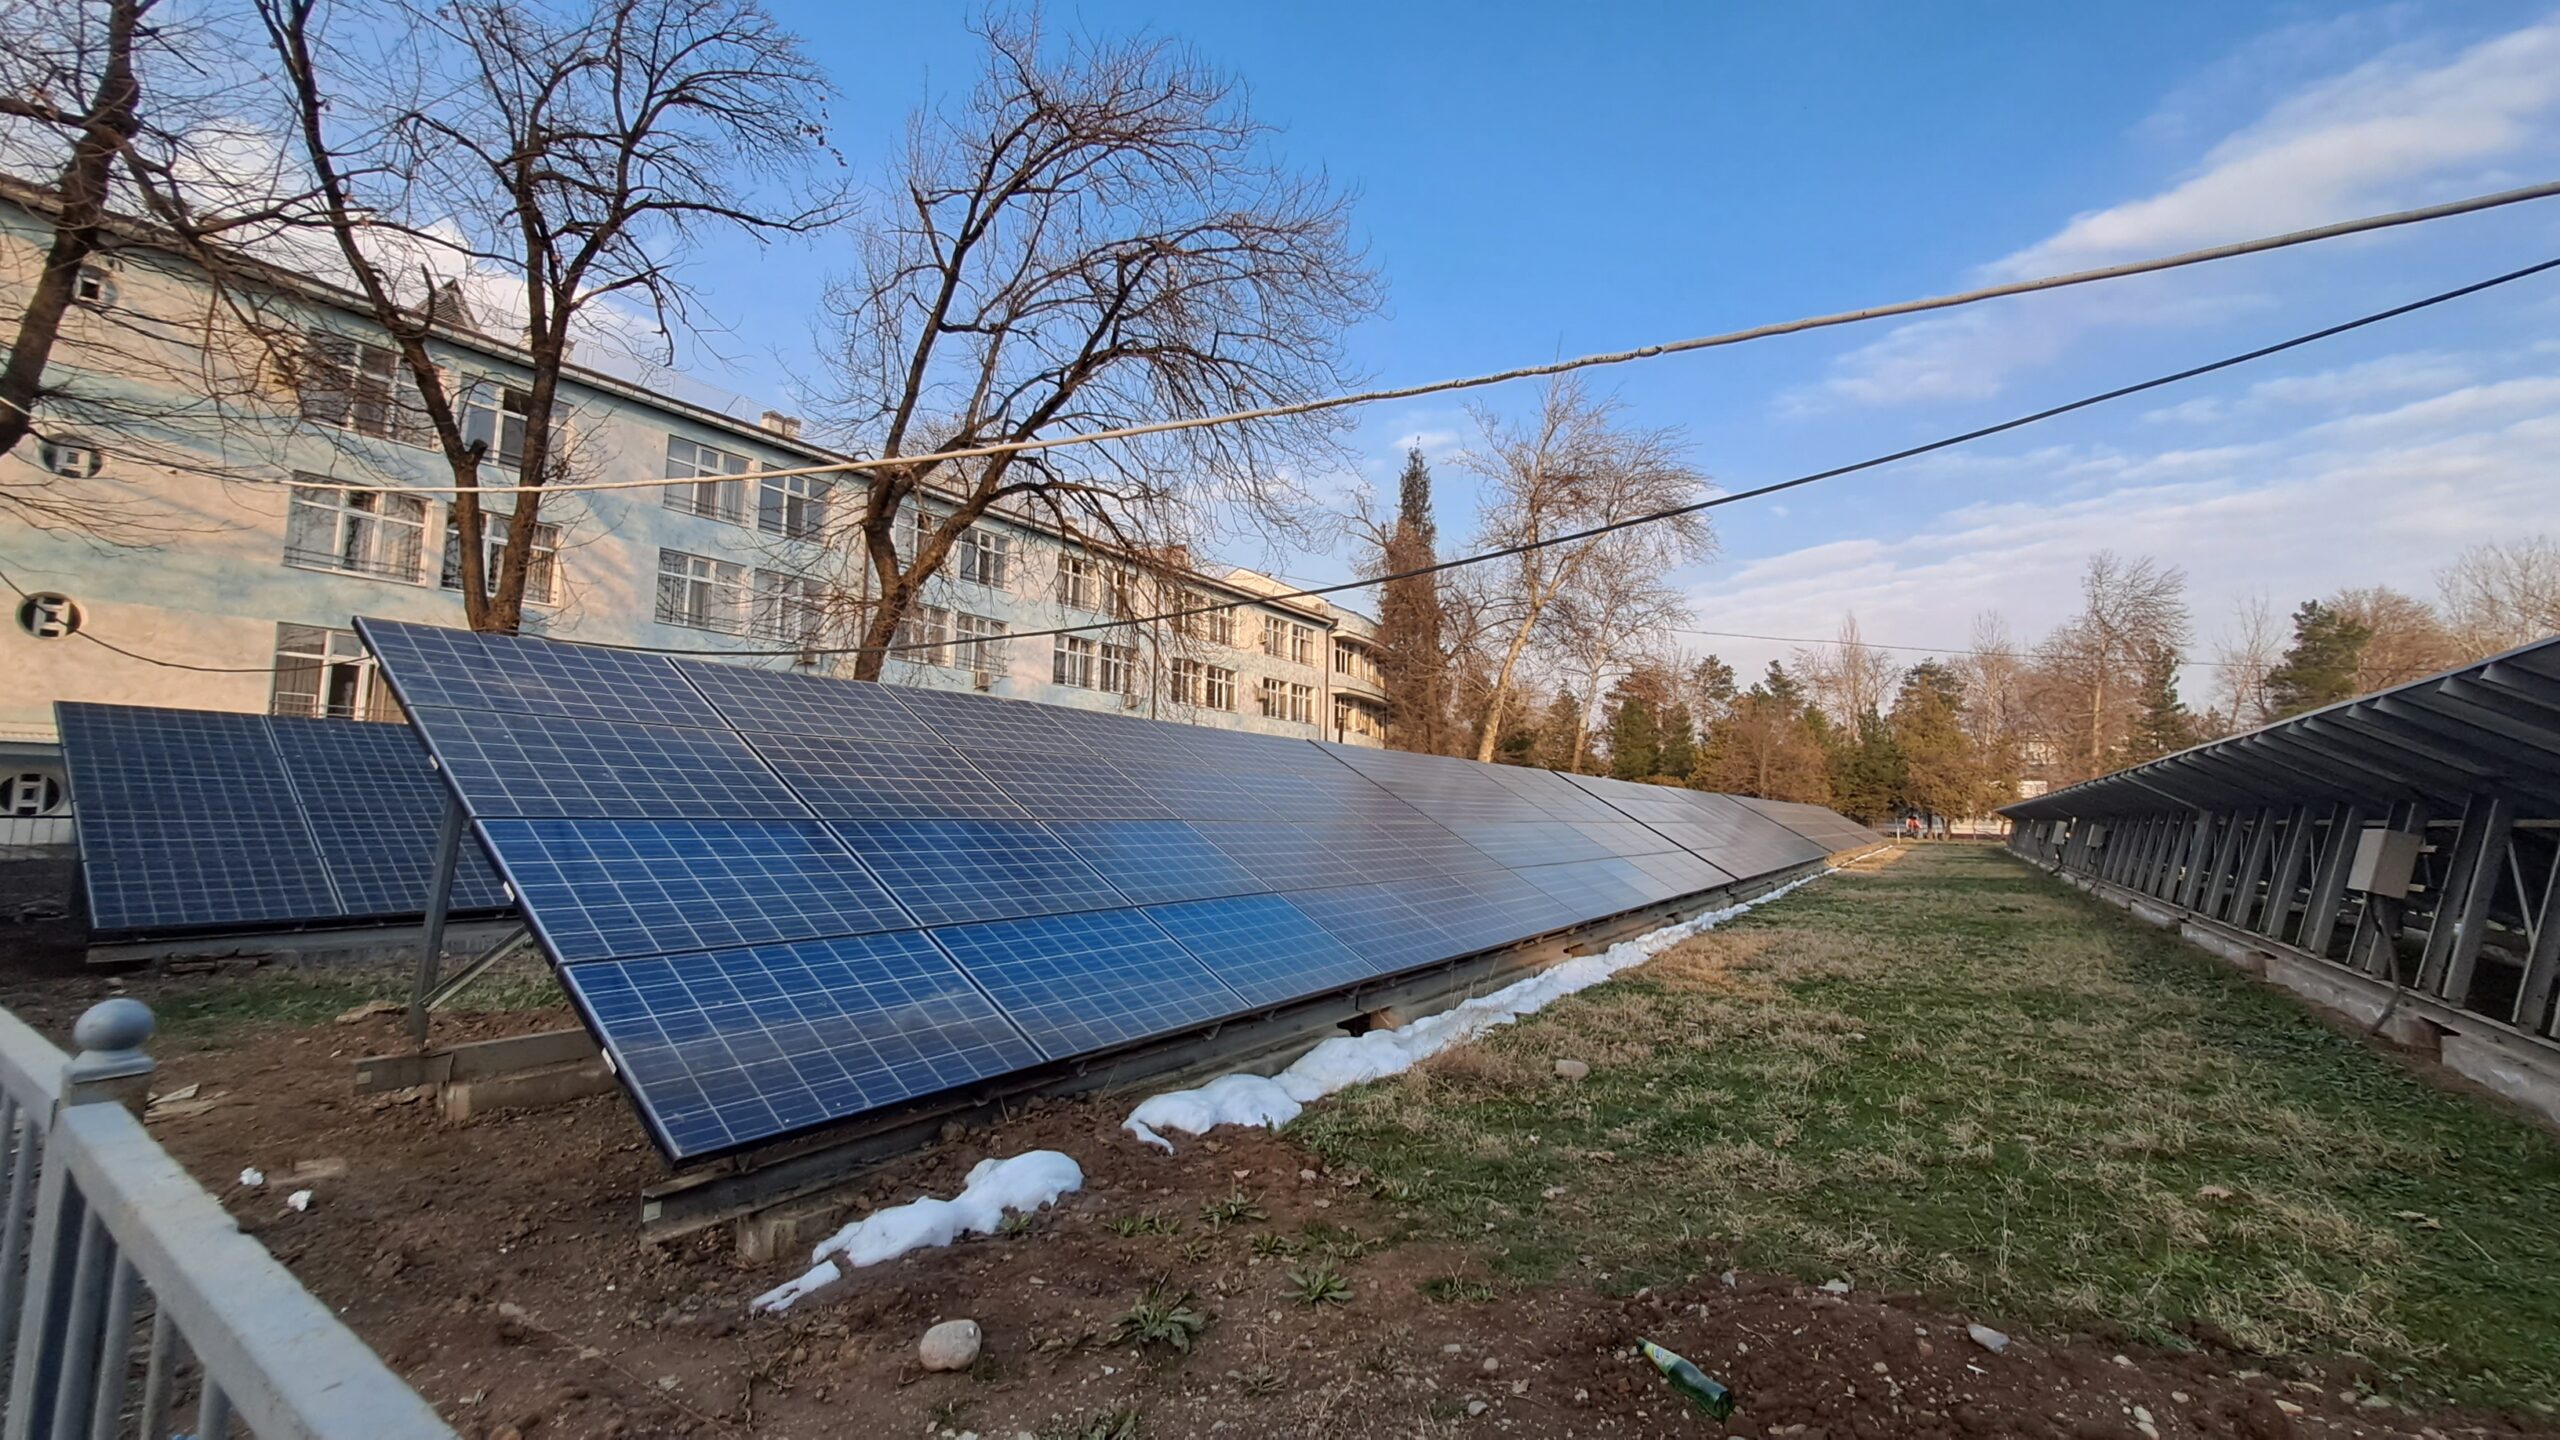 Solar panels in Dushanbe. Photo: CABAR.asia